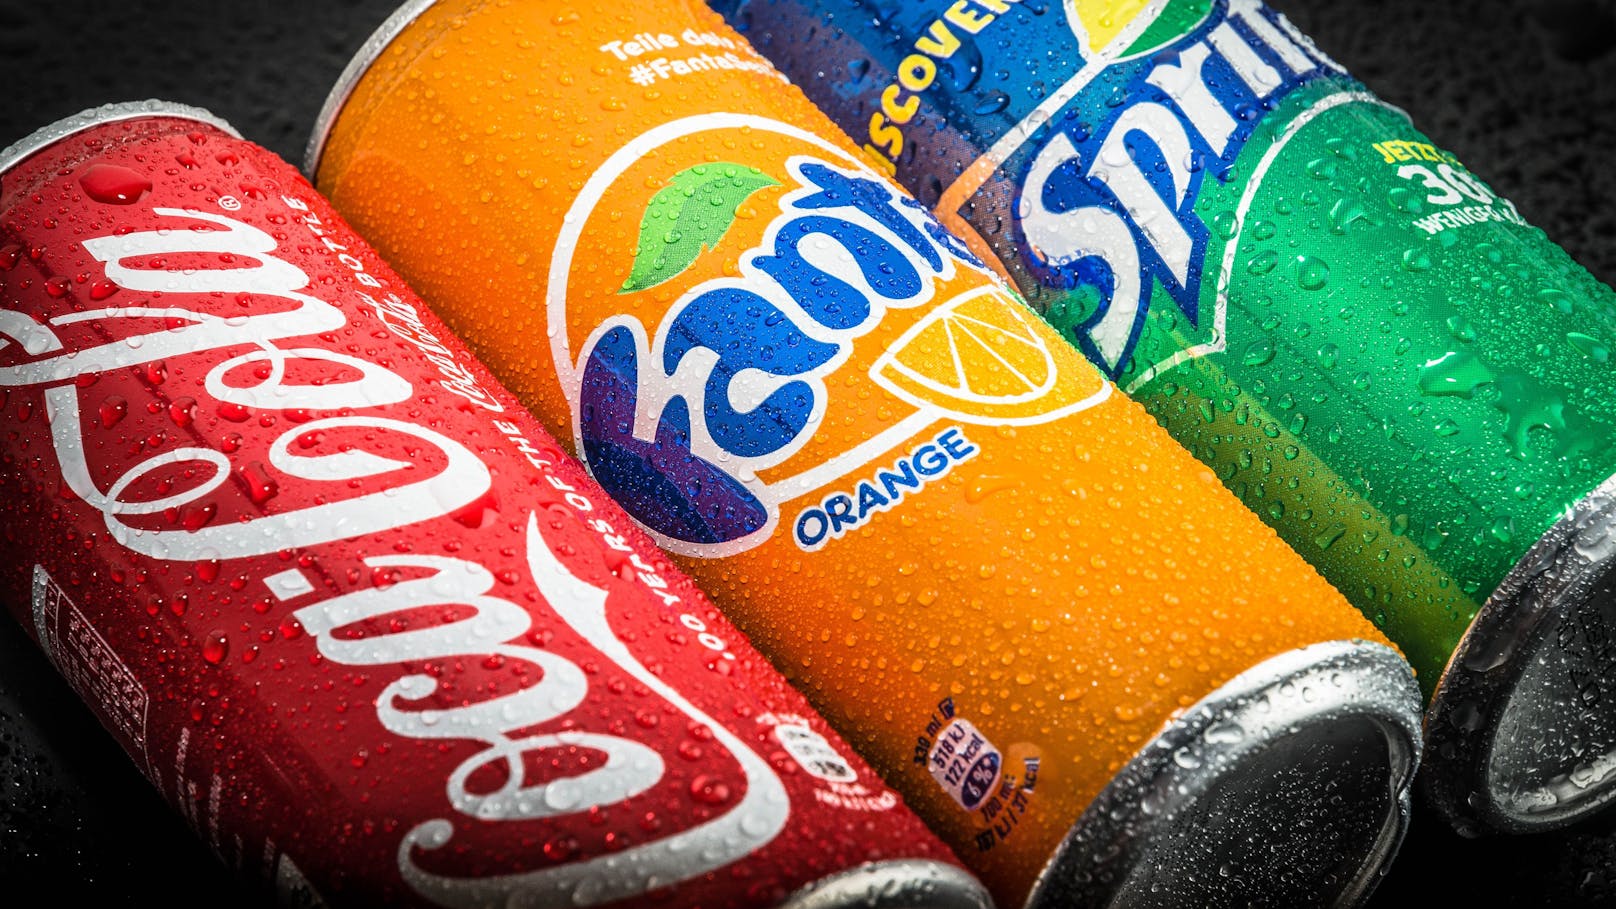 Statt wie gewohnt im November erhöht der Getränke-Gigant Coca Cola bereits am 1. September seine Preise.